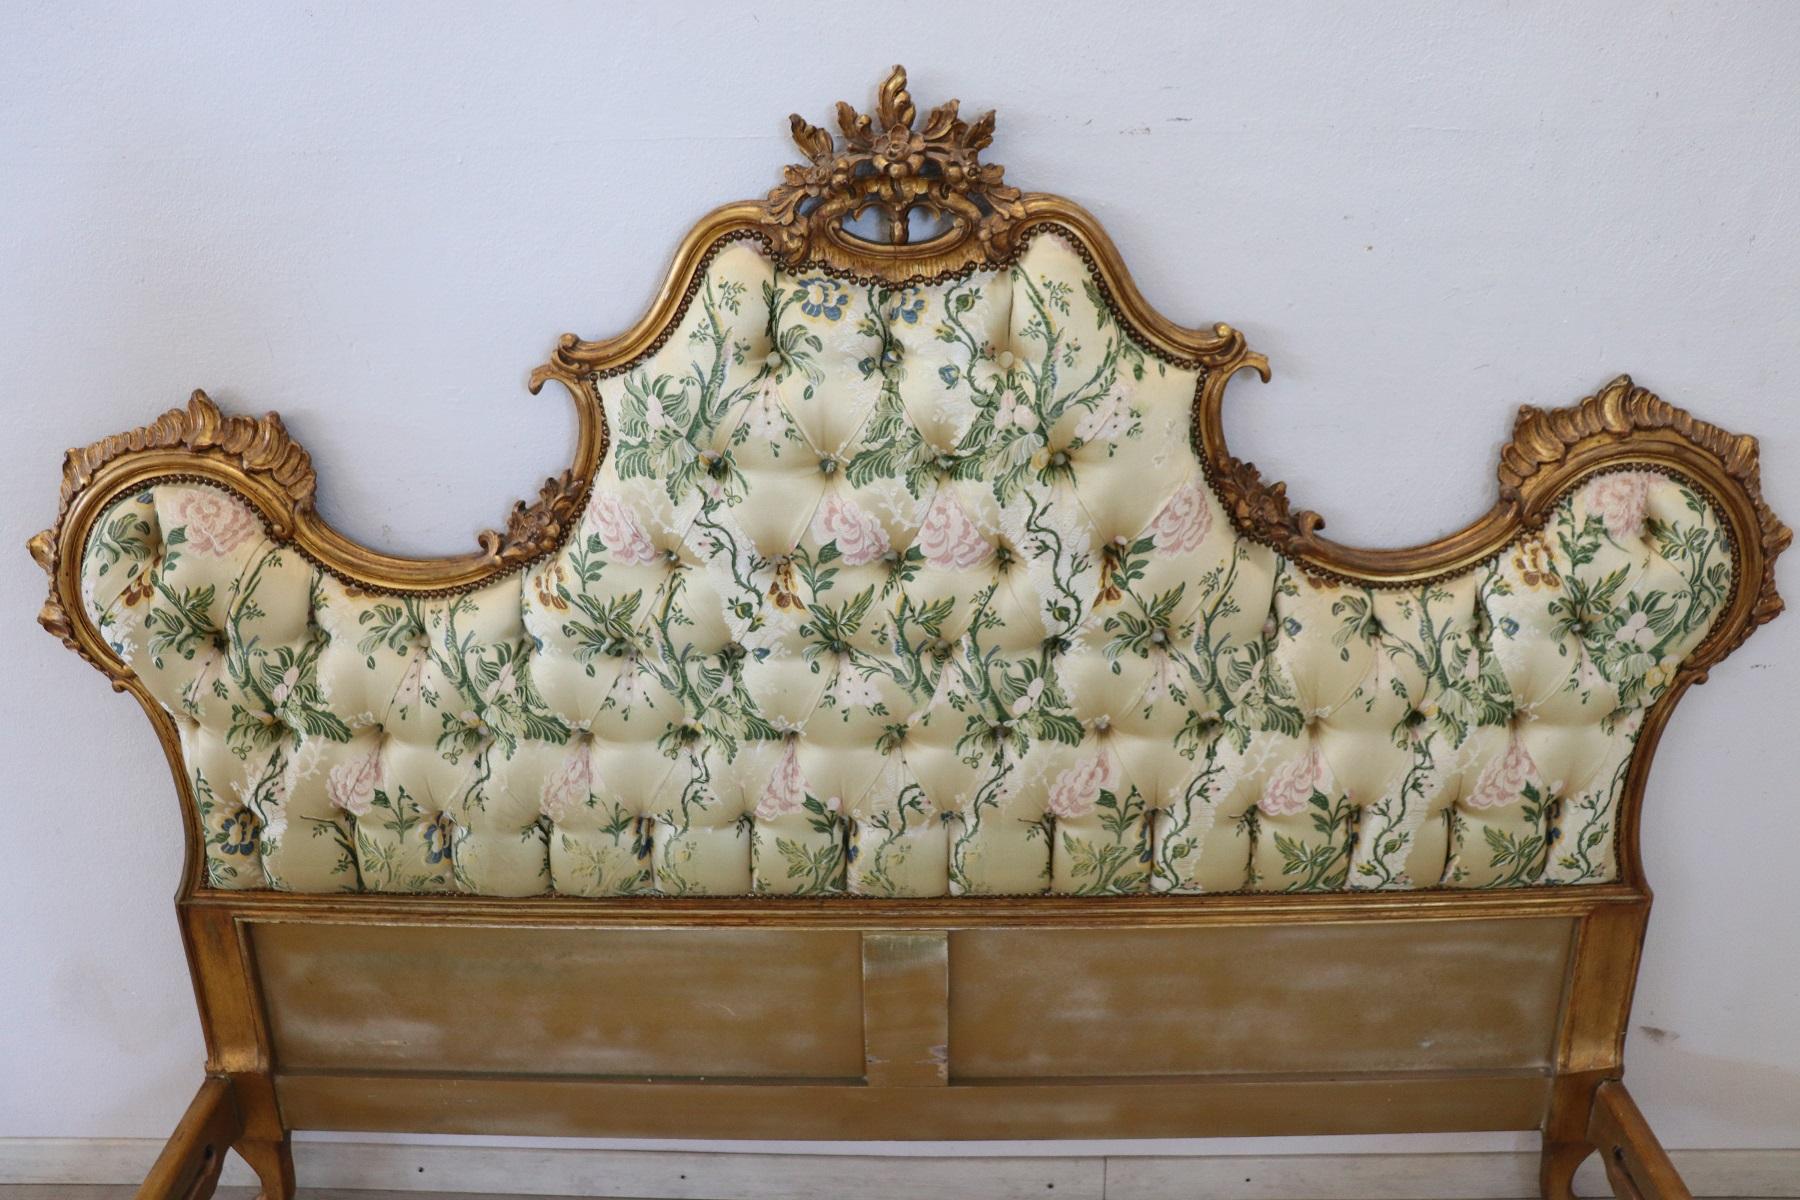 baroque-style emperor bed